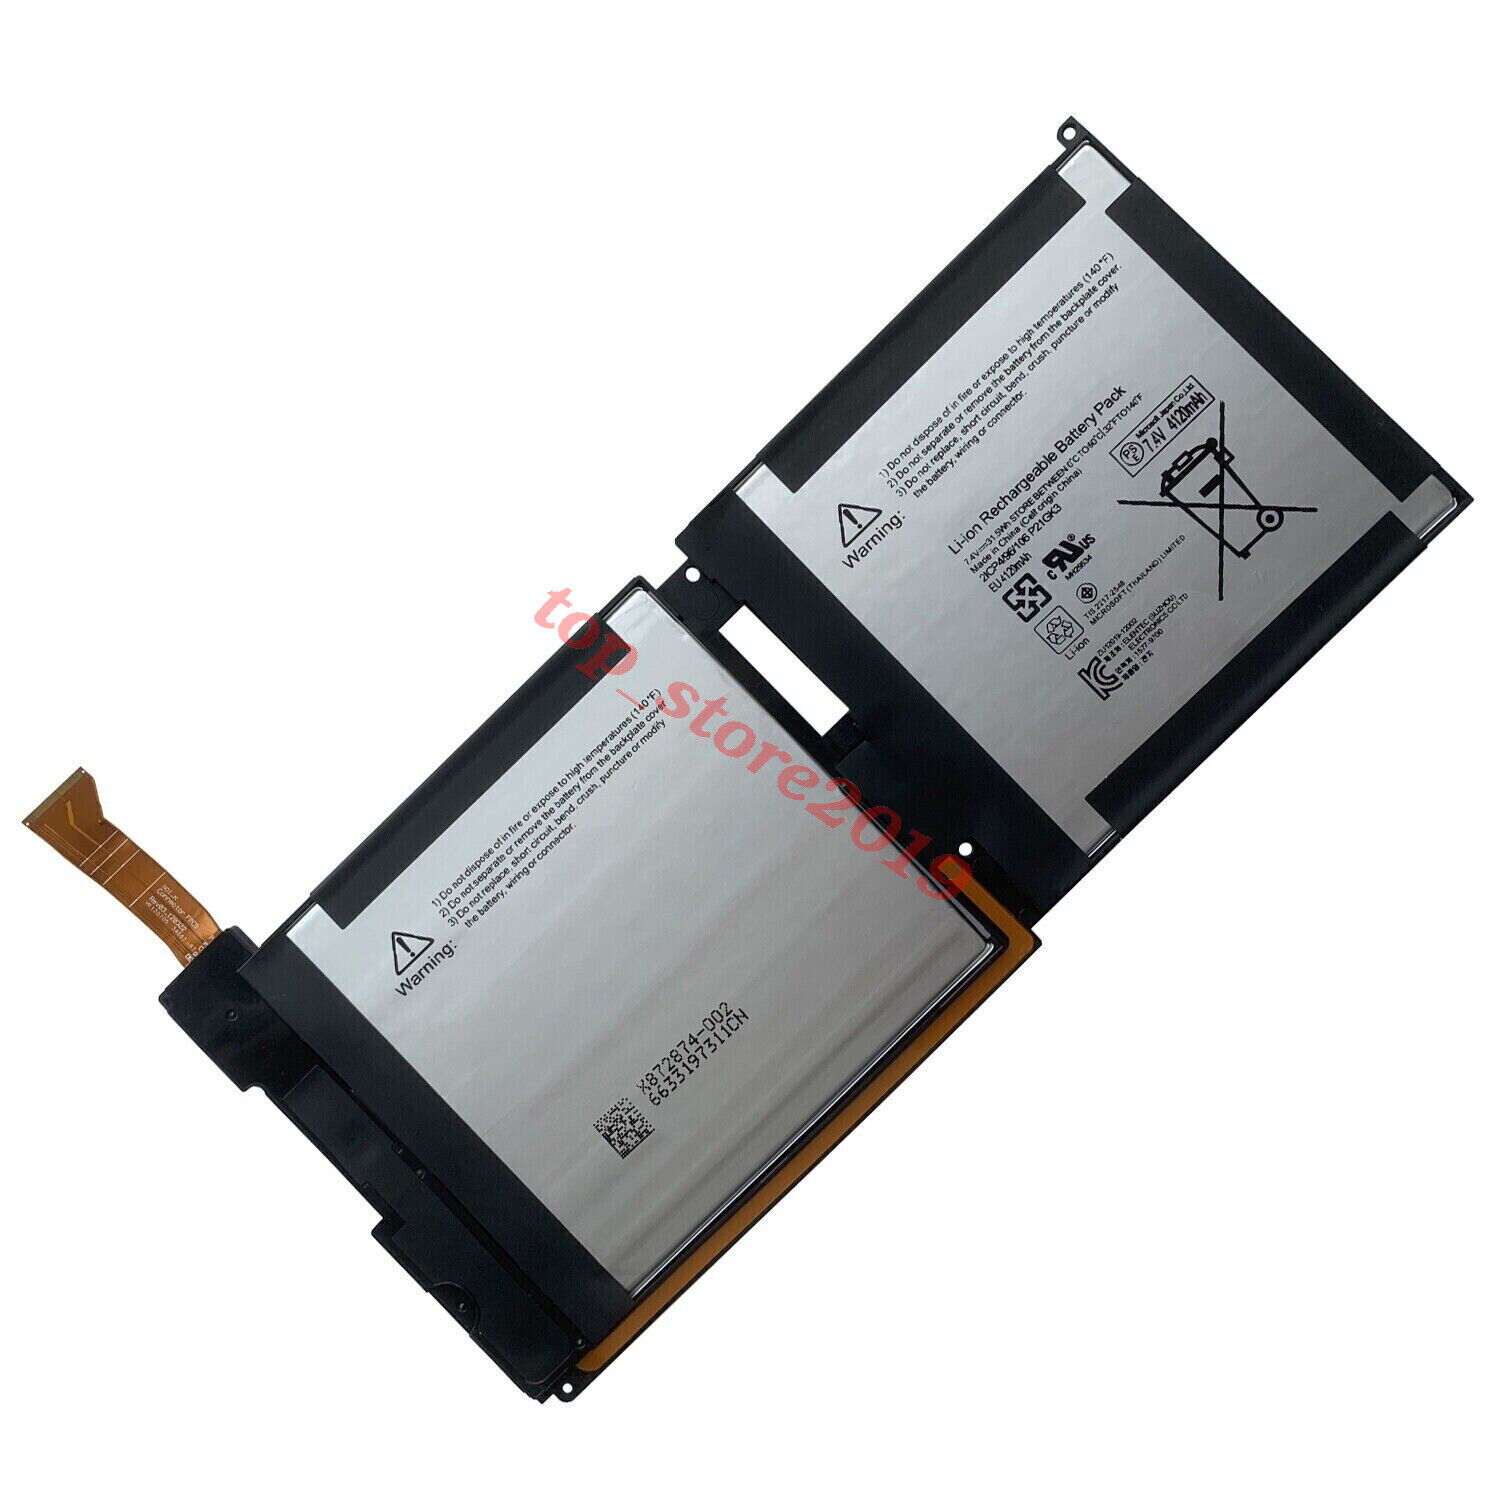 P21GK3 Battery For Microsoft Surface RT 1st Gen 1516 Tablet 7.4V 4120mAh 31.5WH